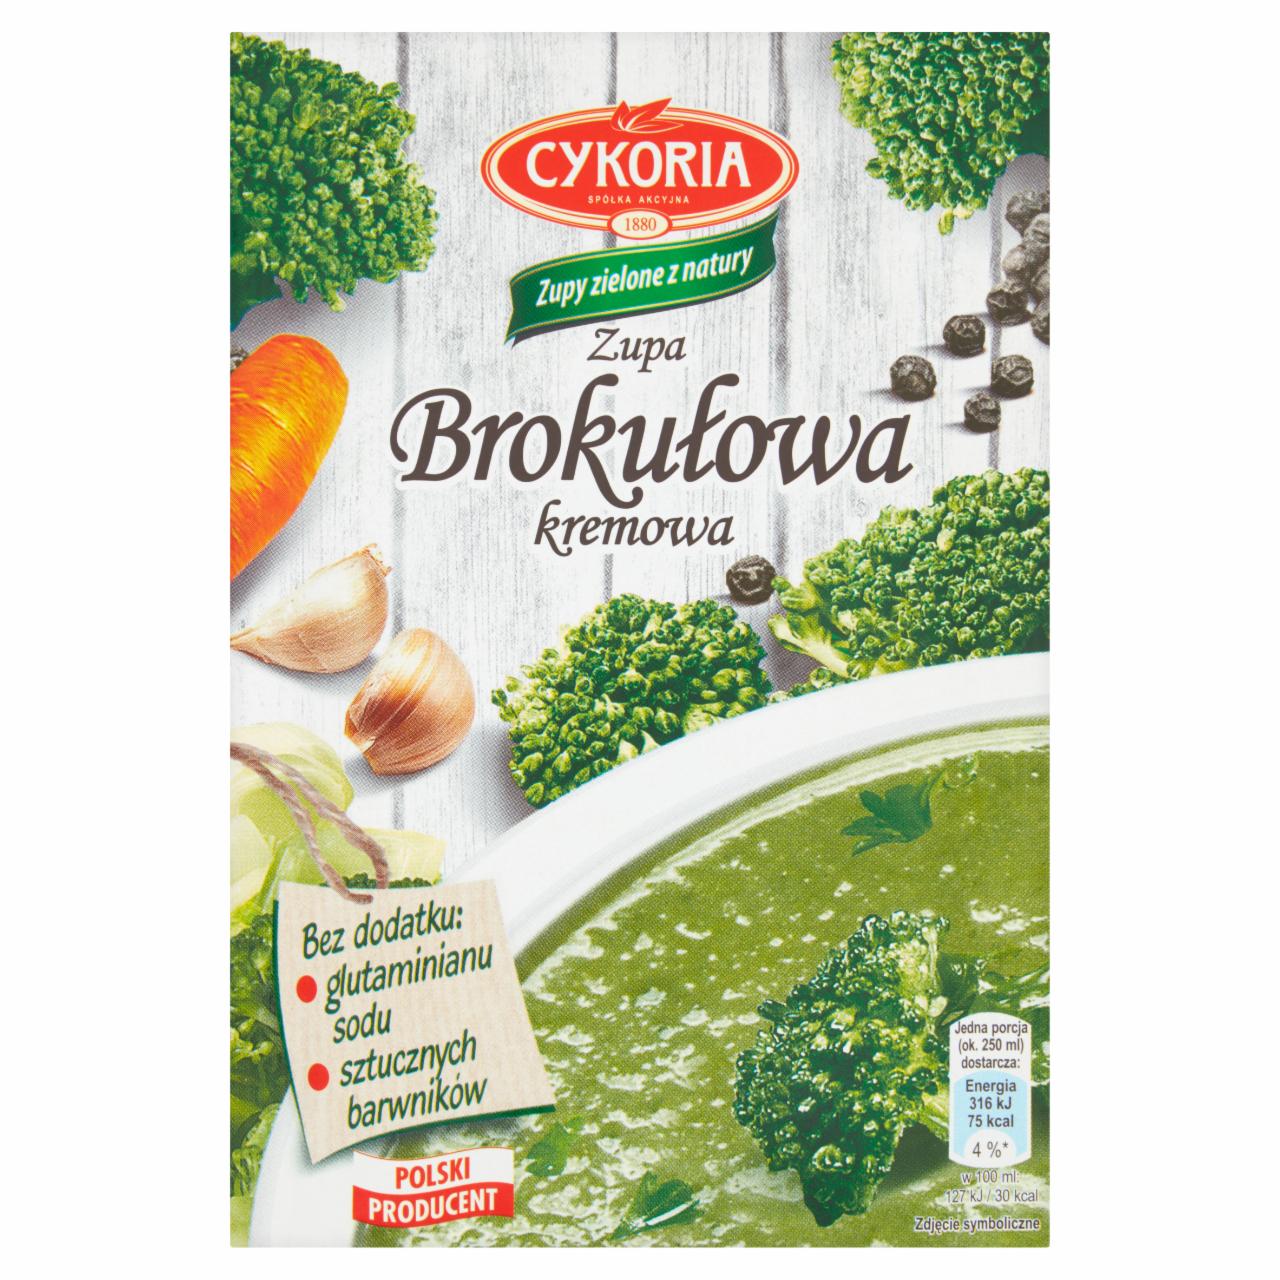 Zdjęcia - Cykoria Zupa brokułowa kremowa 50 g